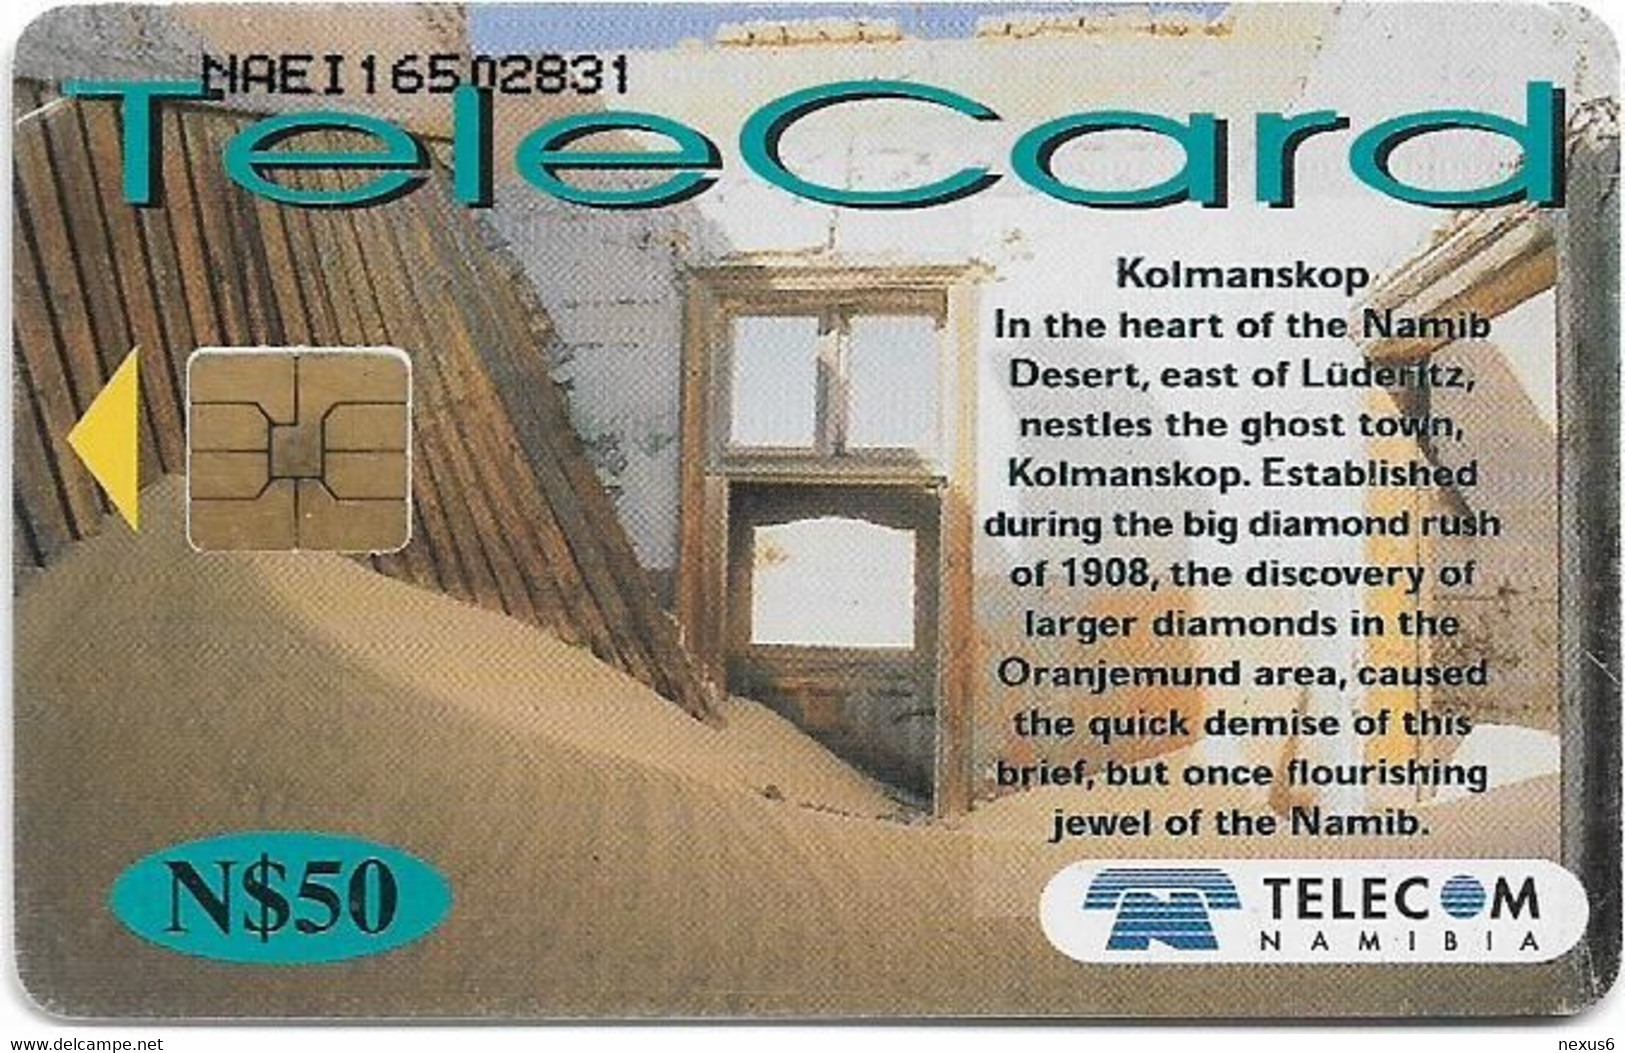 Namibia - Telecom Namibia - Places Of Interest, Kolmanskop, 2001, 50$, Used - Namibië